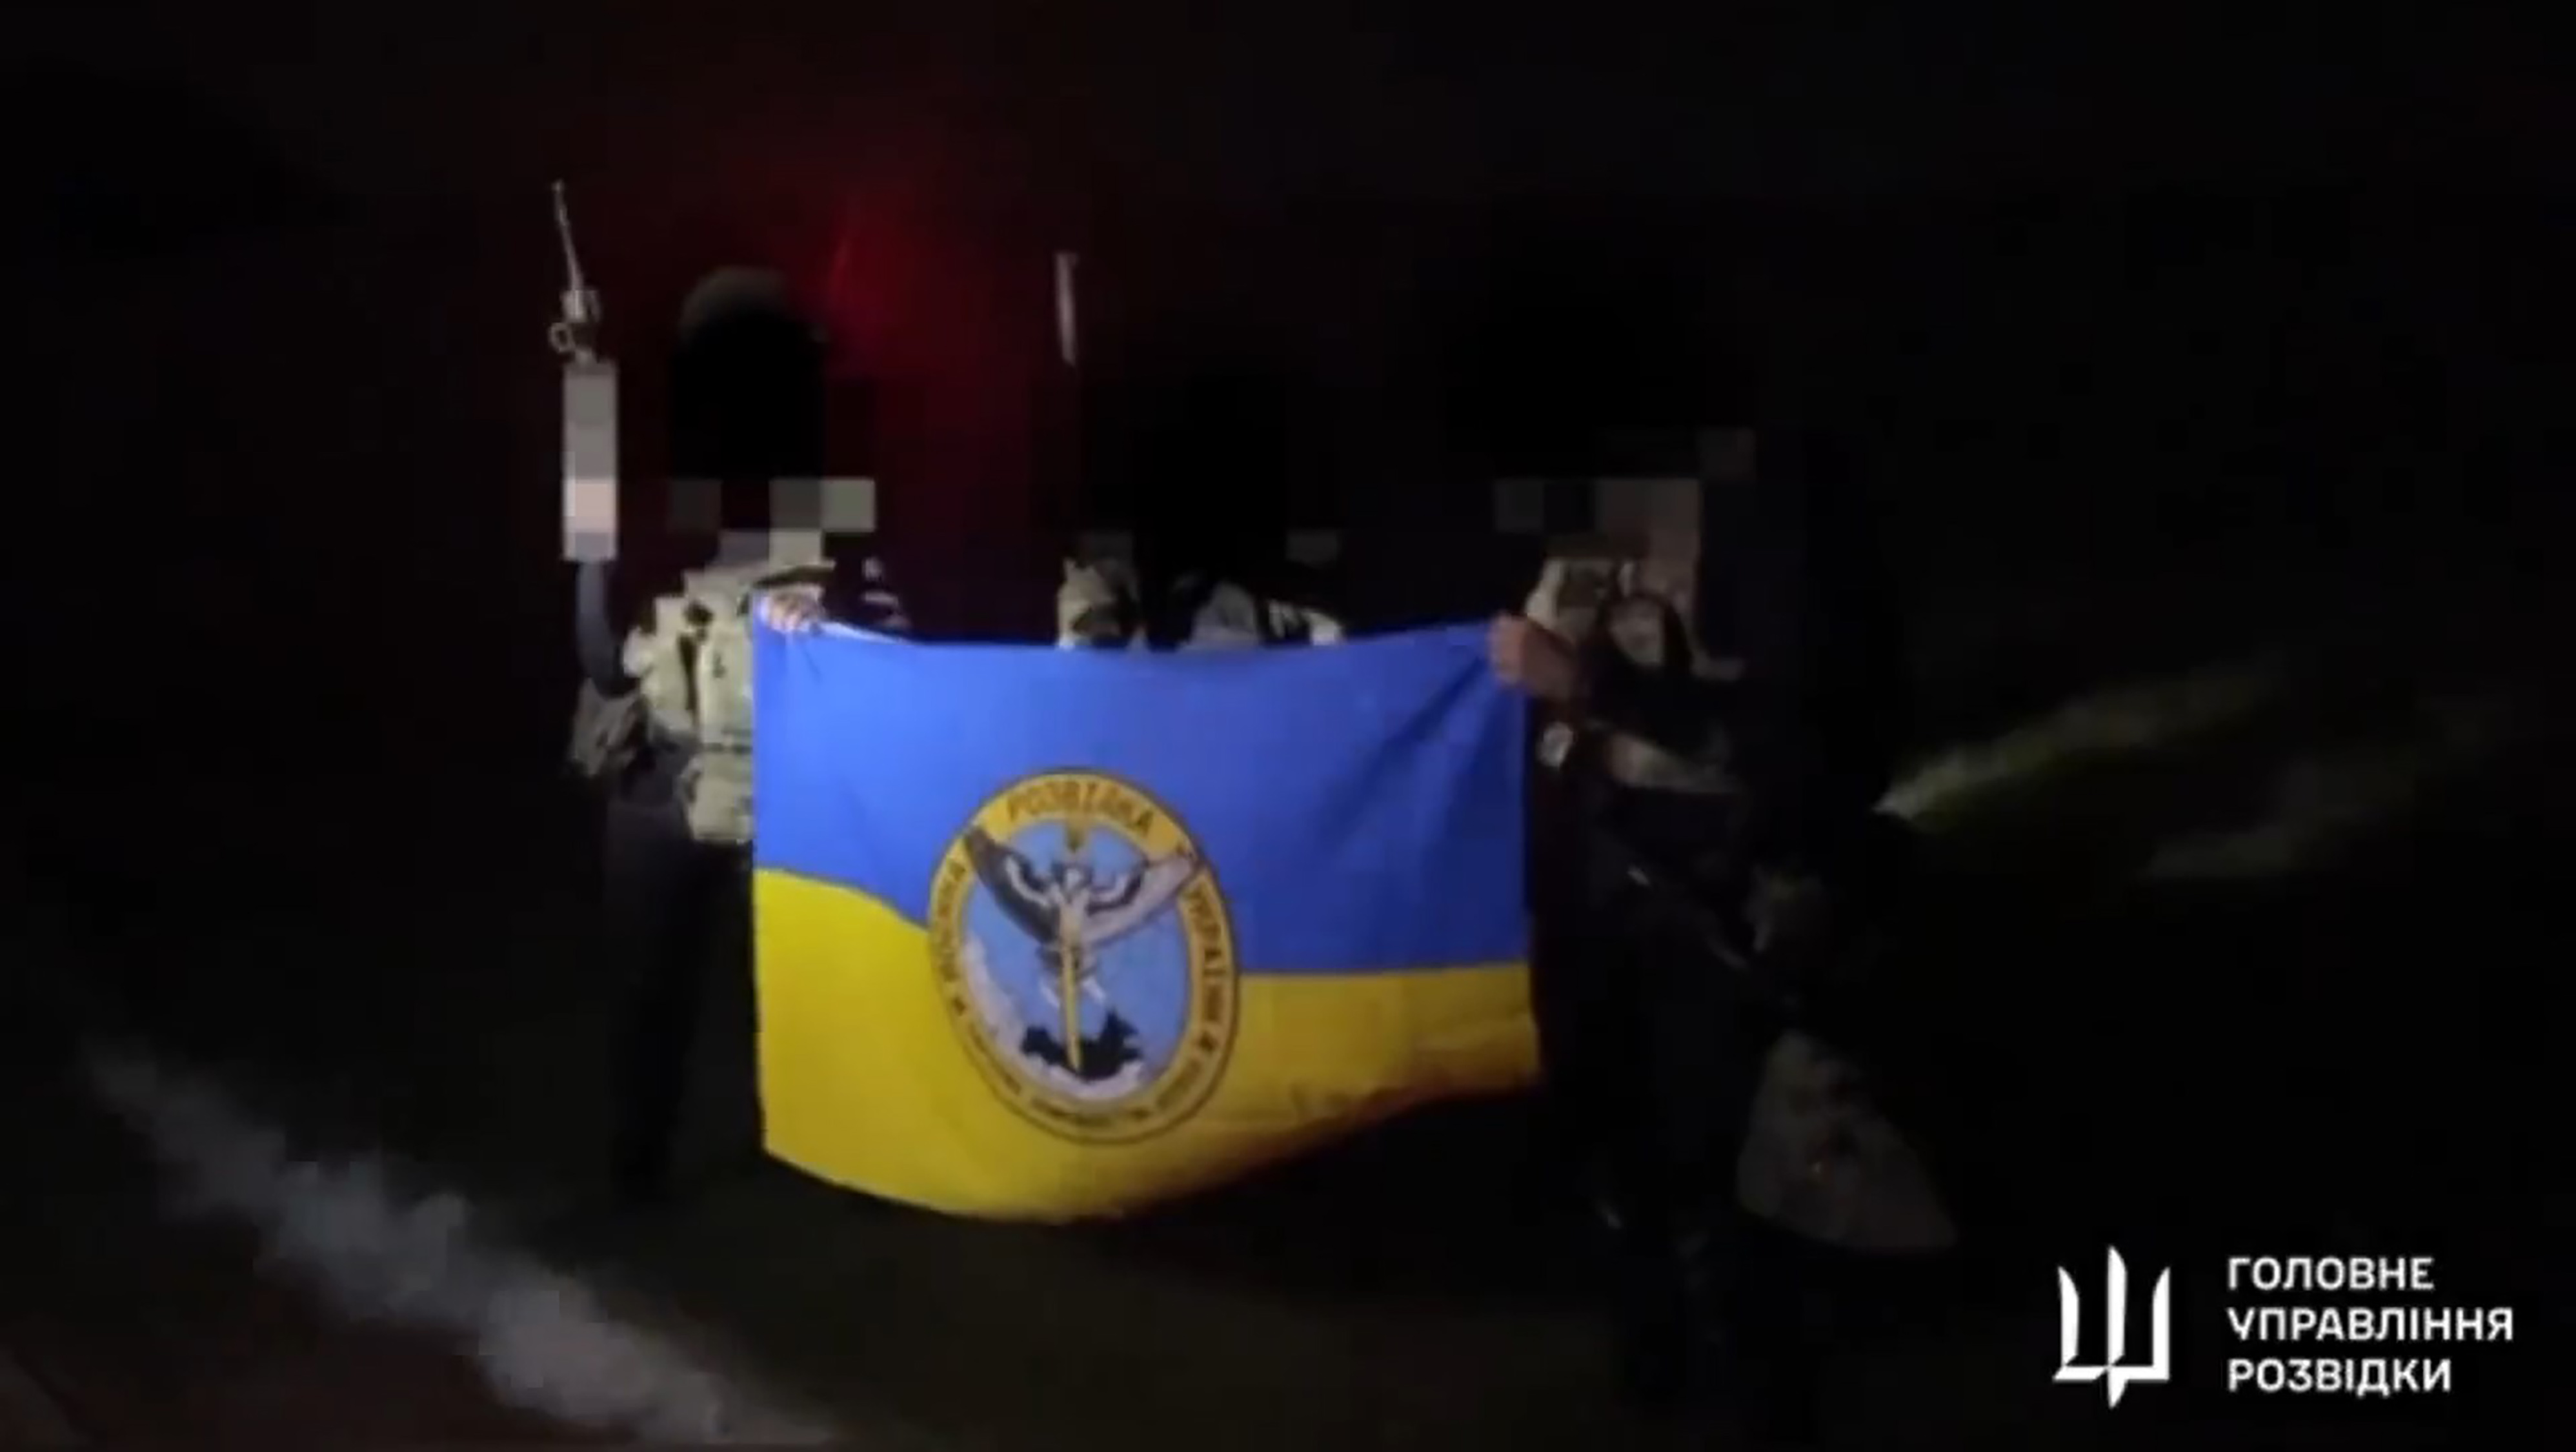 Auf Aufnahmen war zu sehen, wie Soldaten eine ukrainische Flagge hochhielten